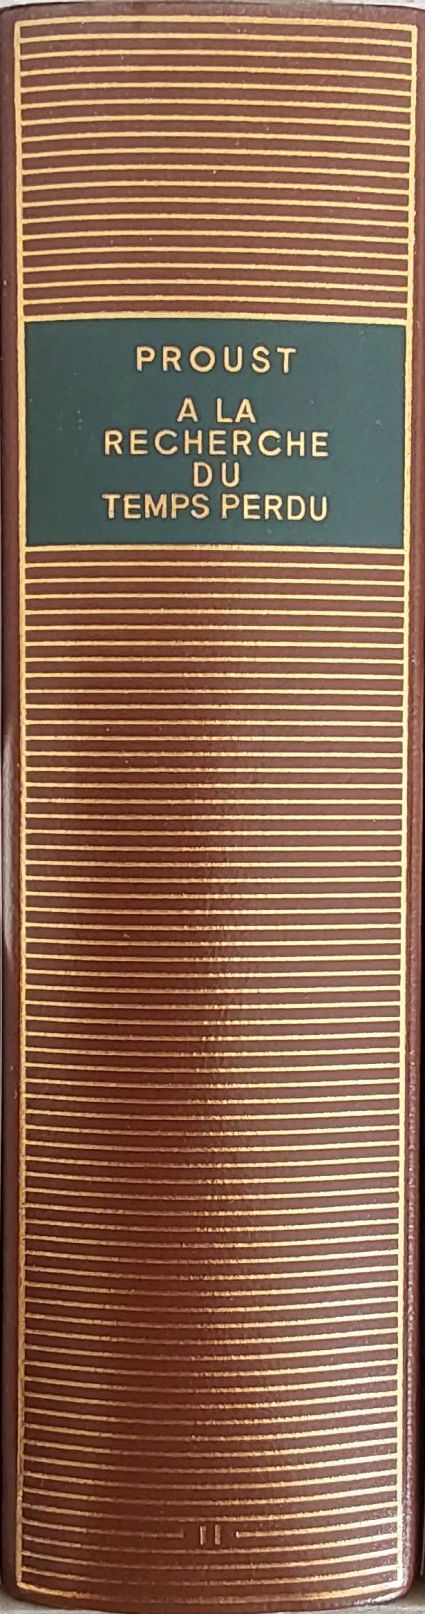 Volume 101 de Marcel Proust dans la Bibliothèque de la Pléiade.